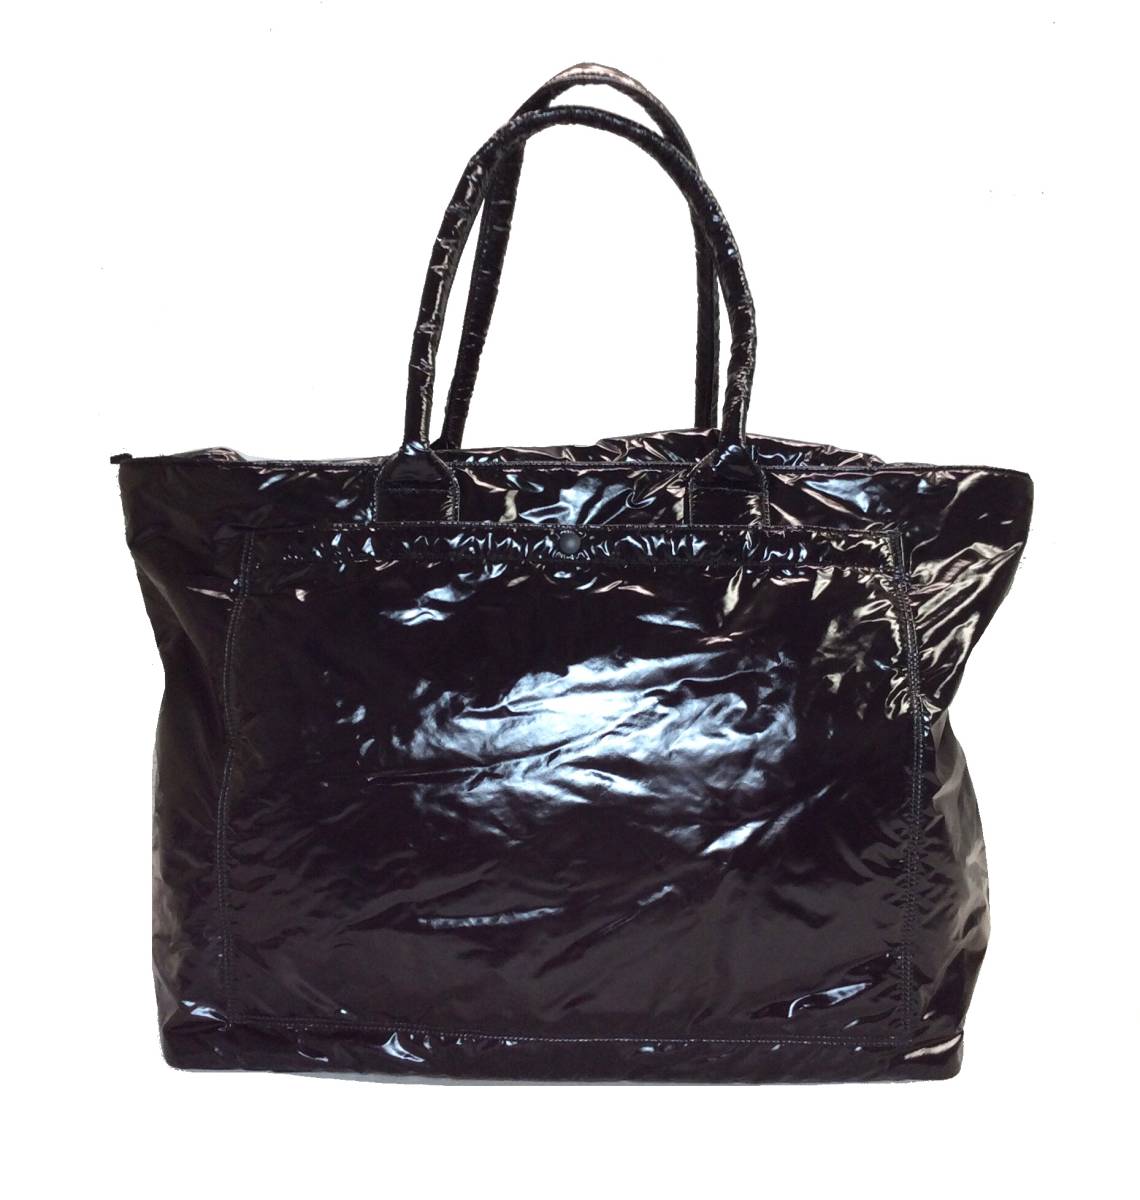 限定版 XL MIRAGE ラミダス RAMIDUS トートバッグ 黒 ブラック 鞄